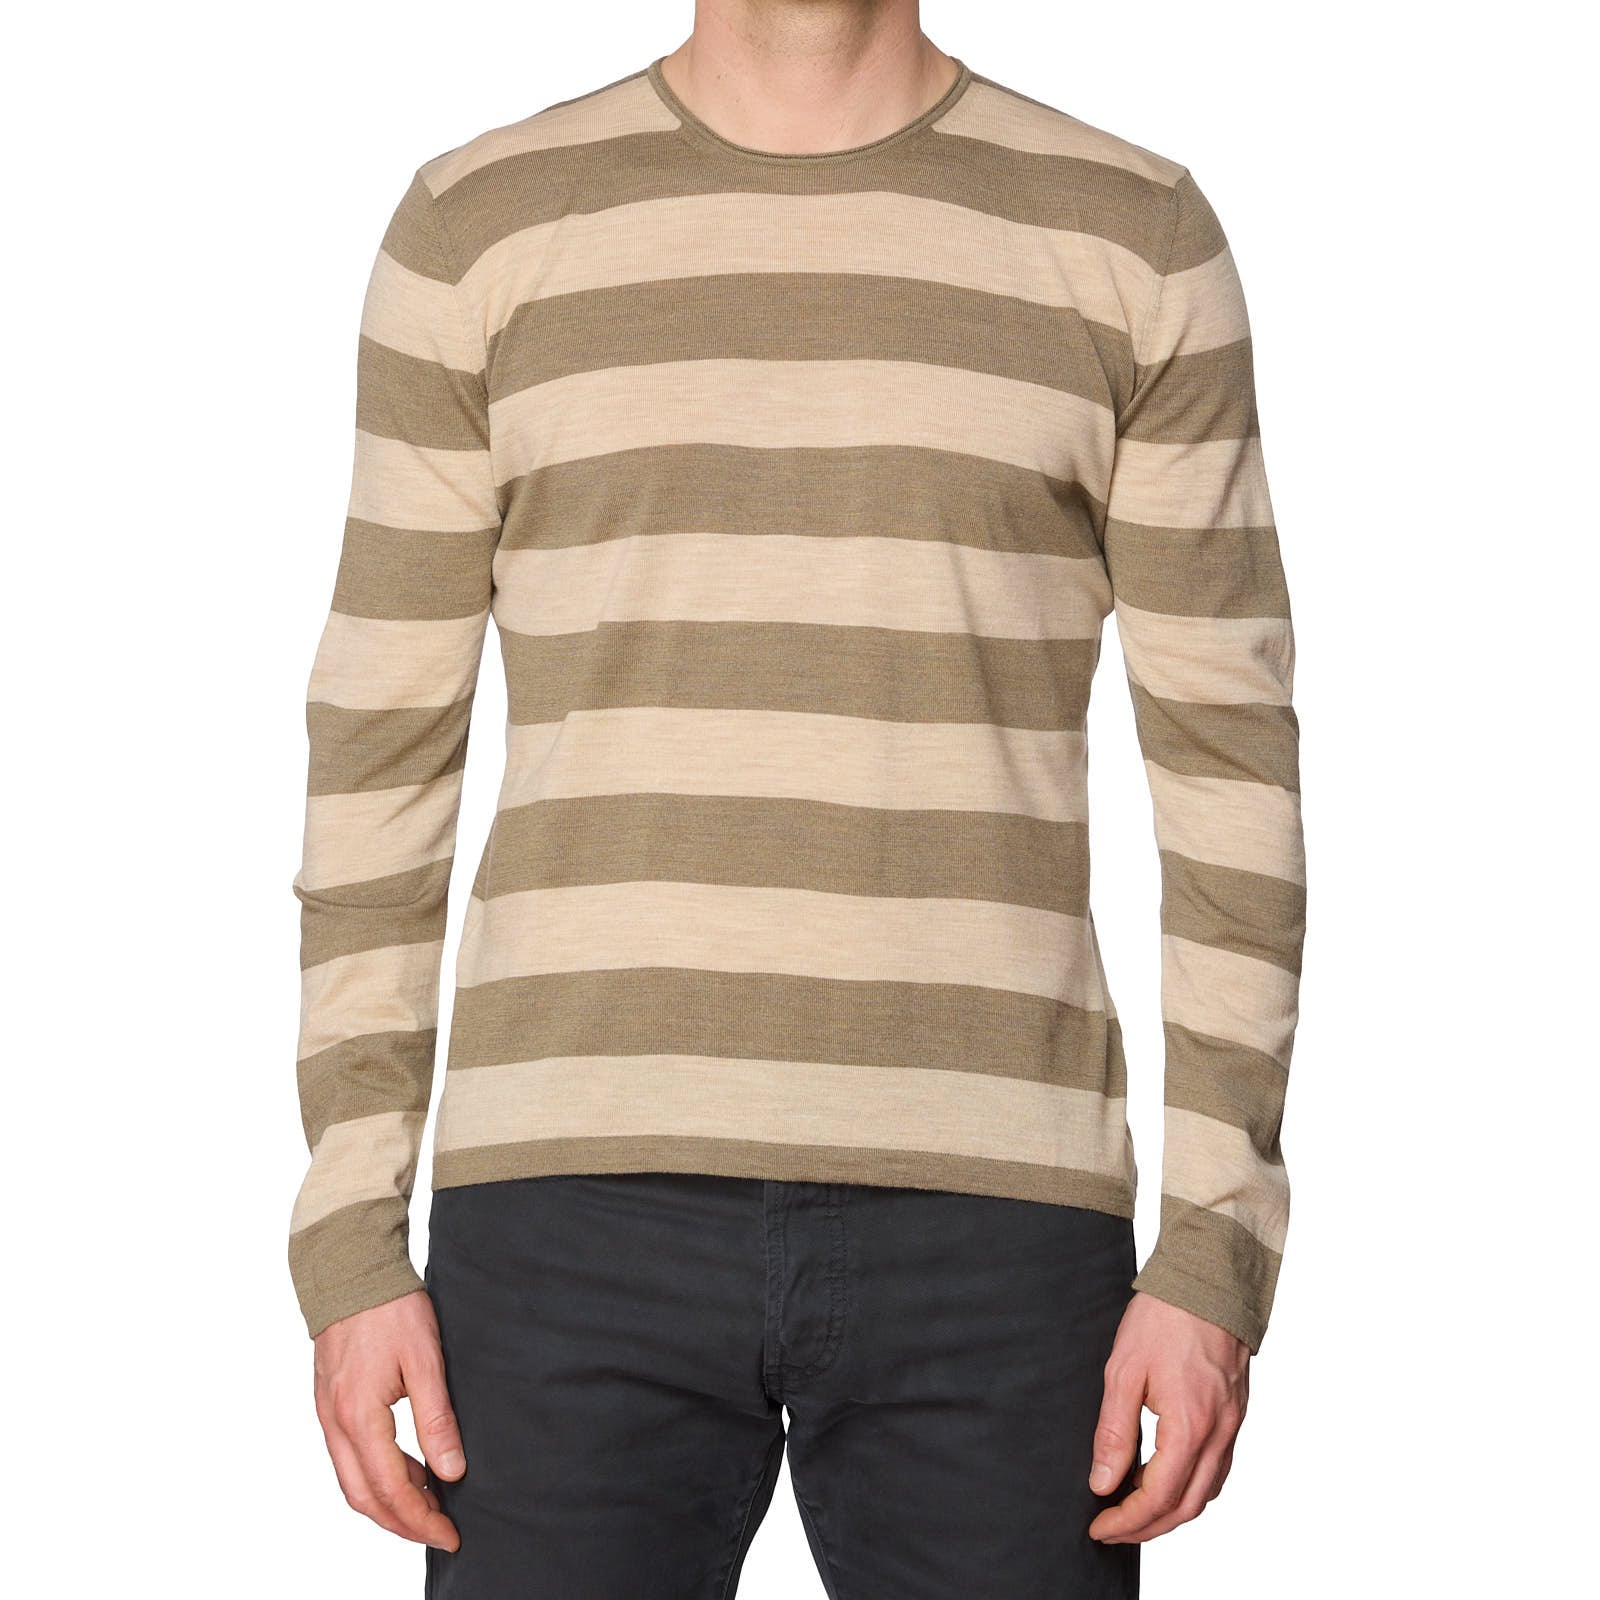 ONES Brown-Beige Striped Loro Piana Wool Super 150's Knit Crewneck Sweater EU 50 NEW US M